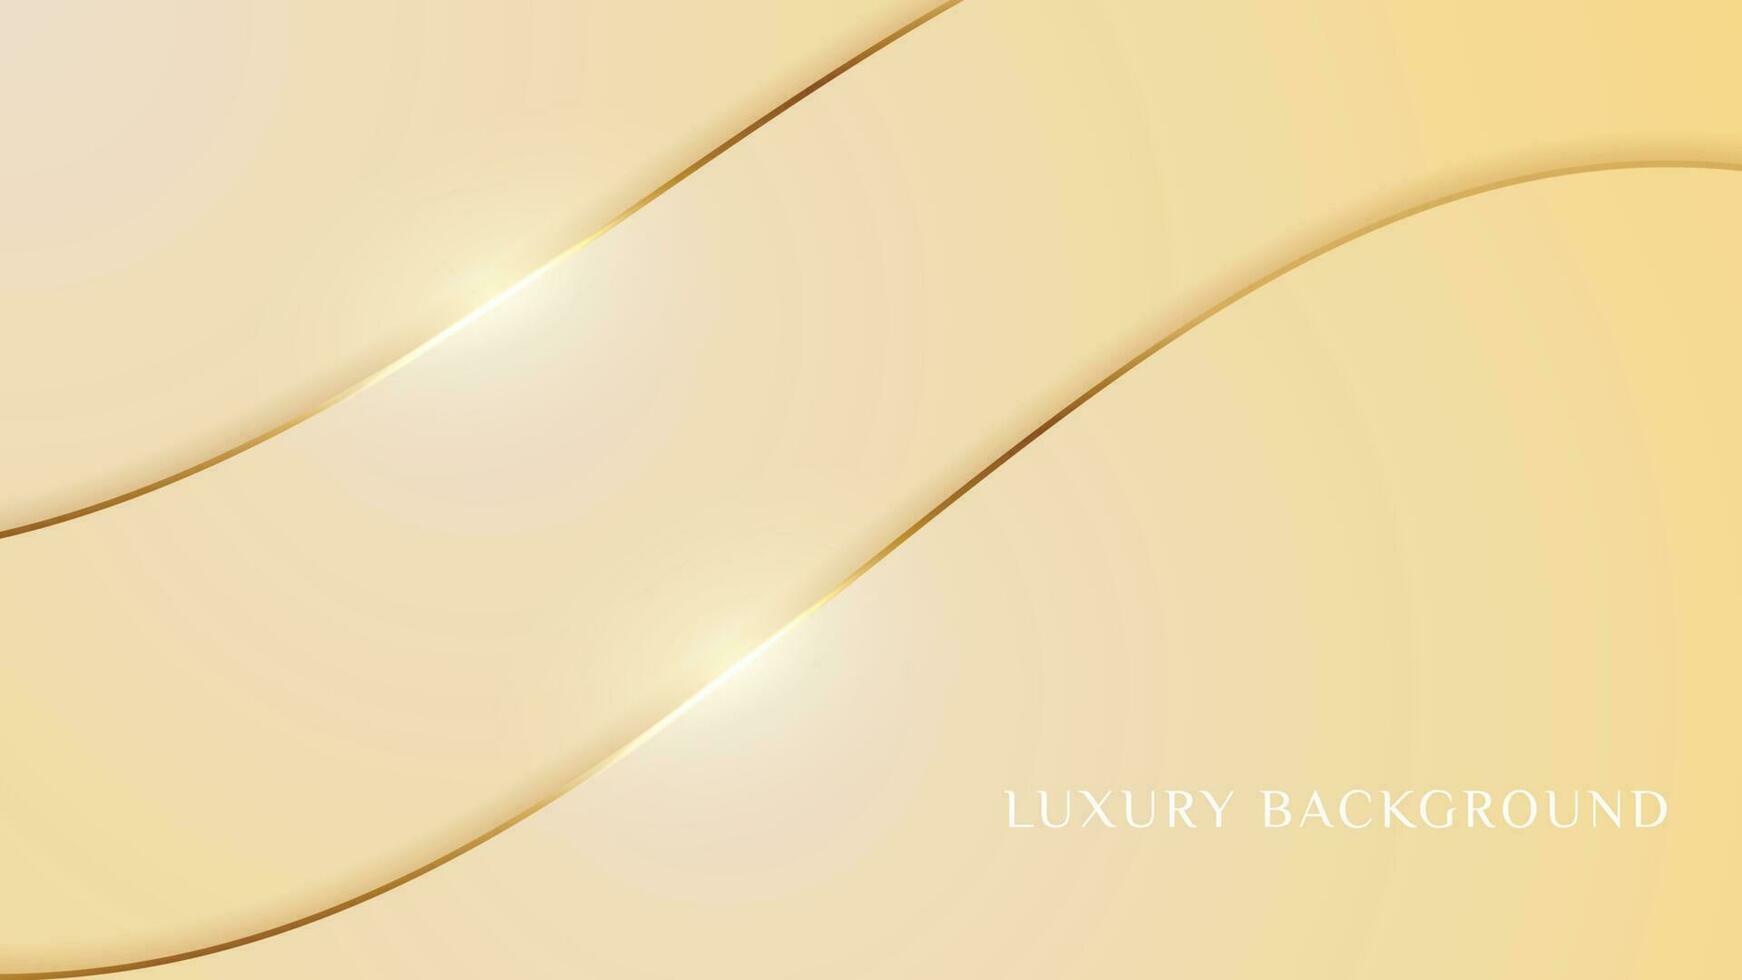 fundo elegante com elementos dourados de linha estilo de corte de papel de luxo realista conceito moderno 3d vetor